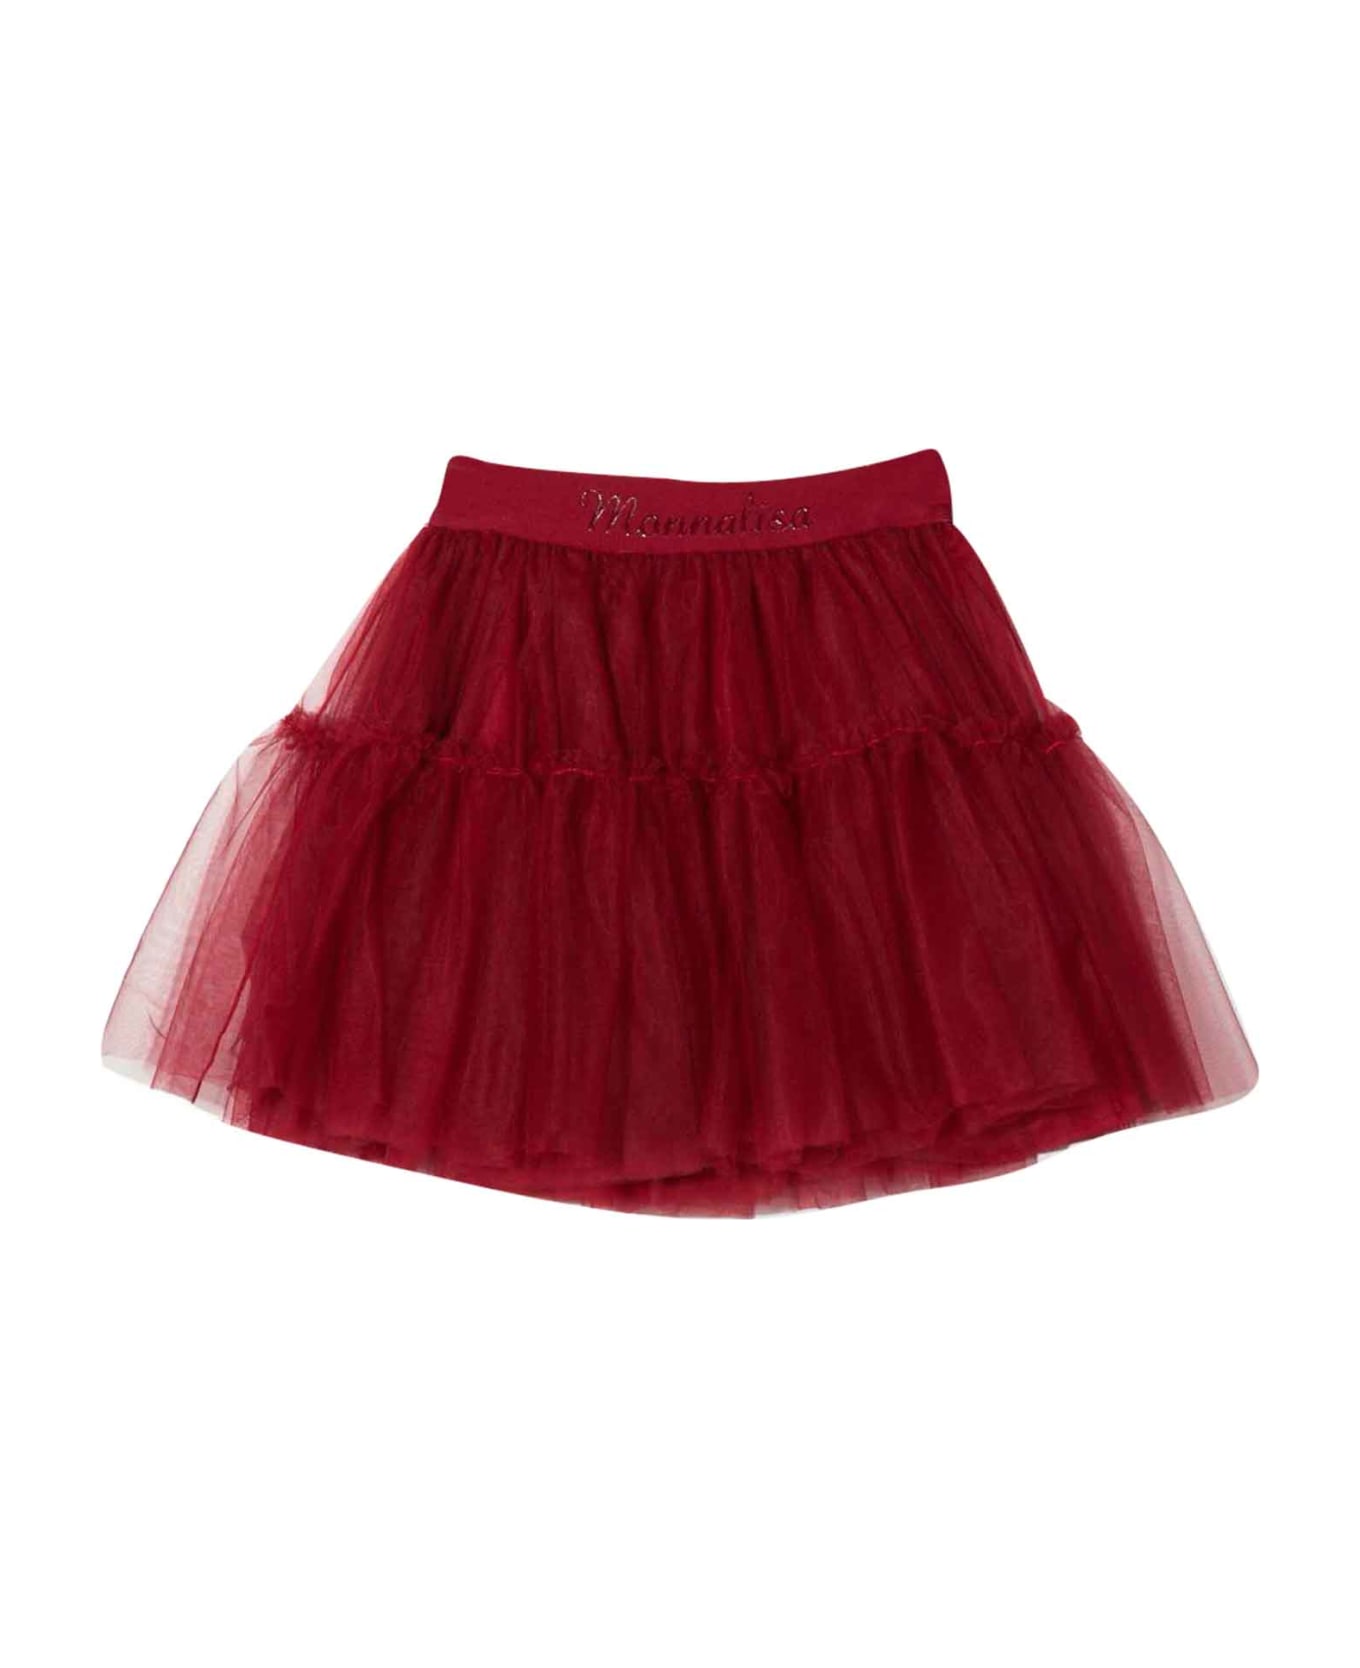 Monnalisa Red Skirt Girl - Rubino